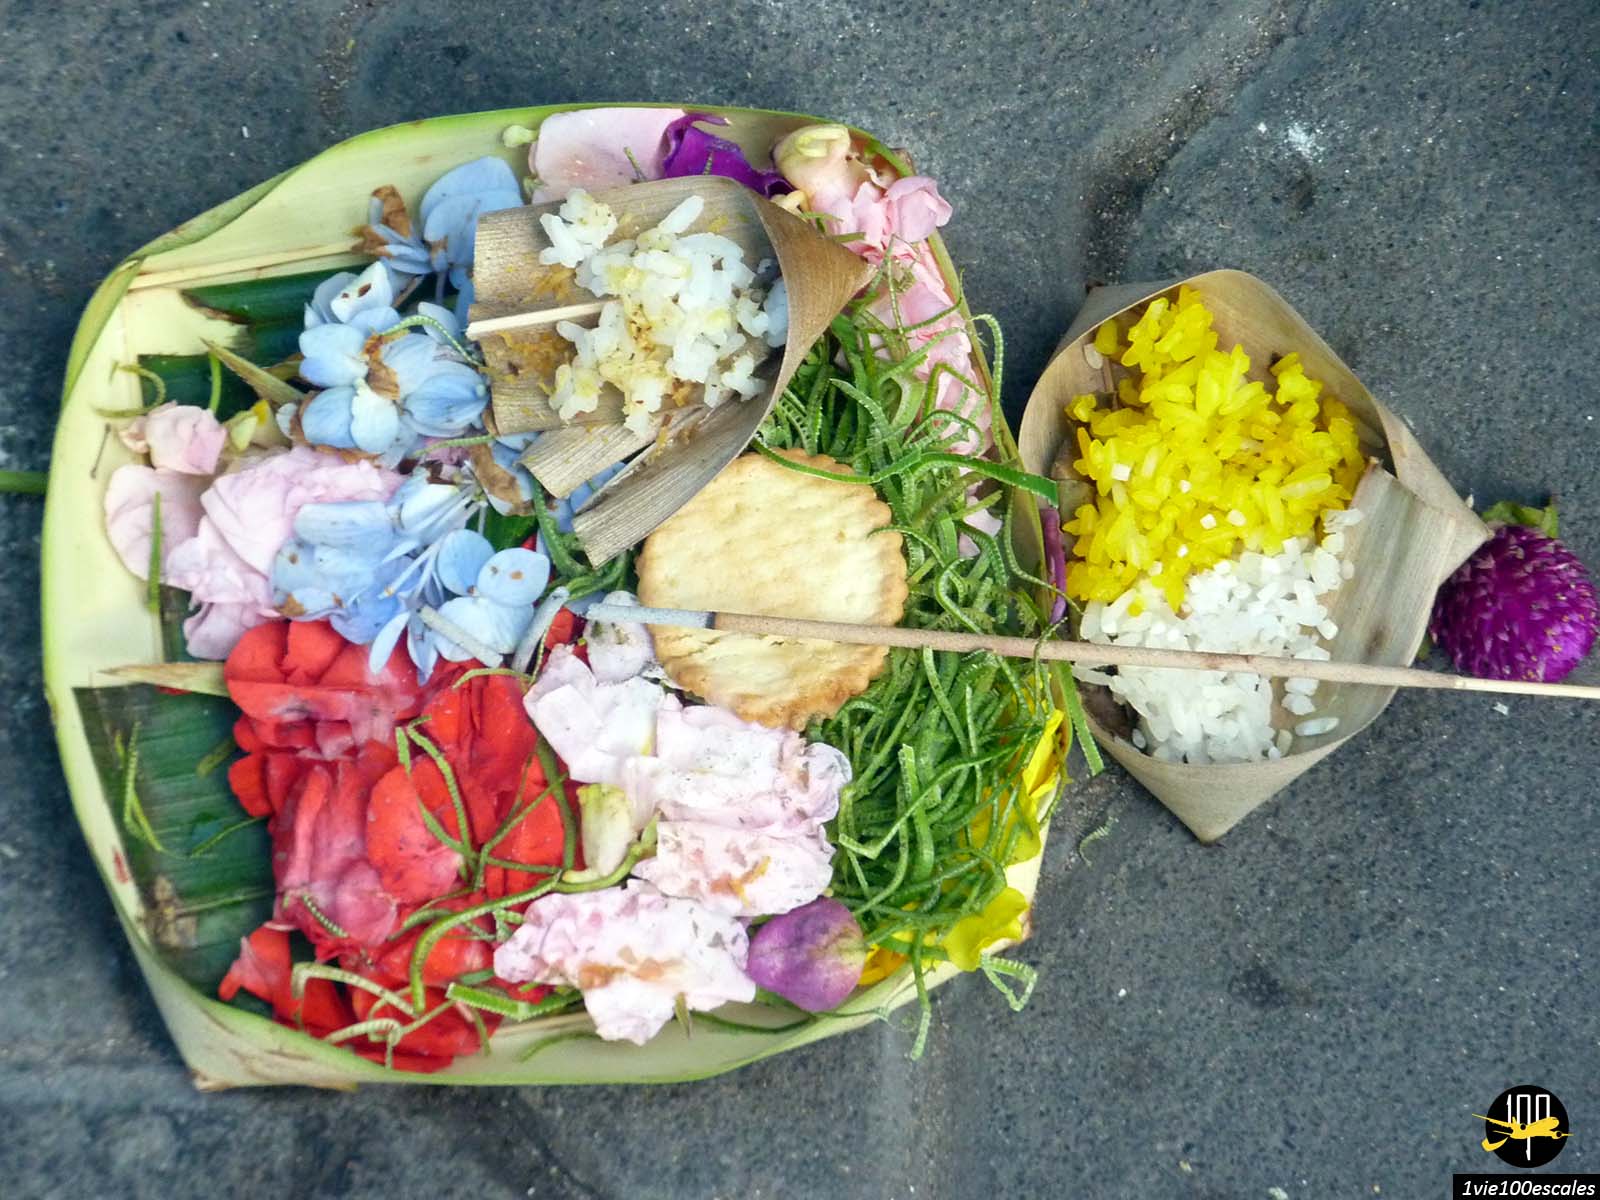 Vous verrez des offrandes partout à Bali : dans les temples évidemment, mais aussi à même les trottoirs dans les rues